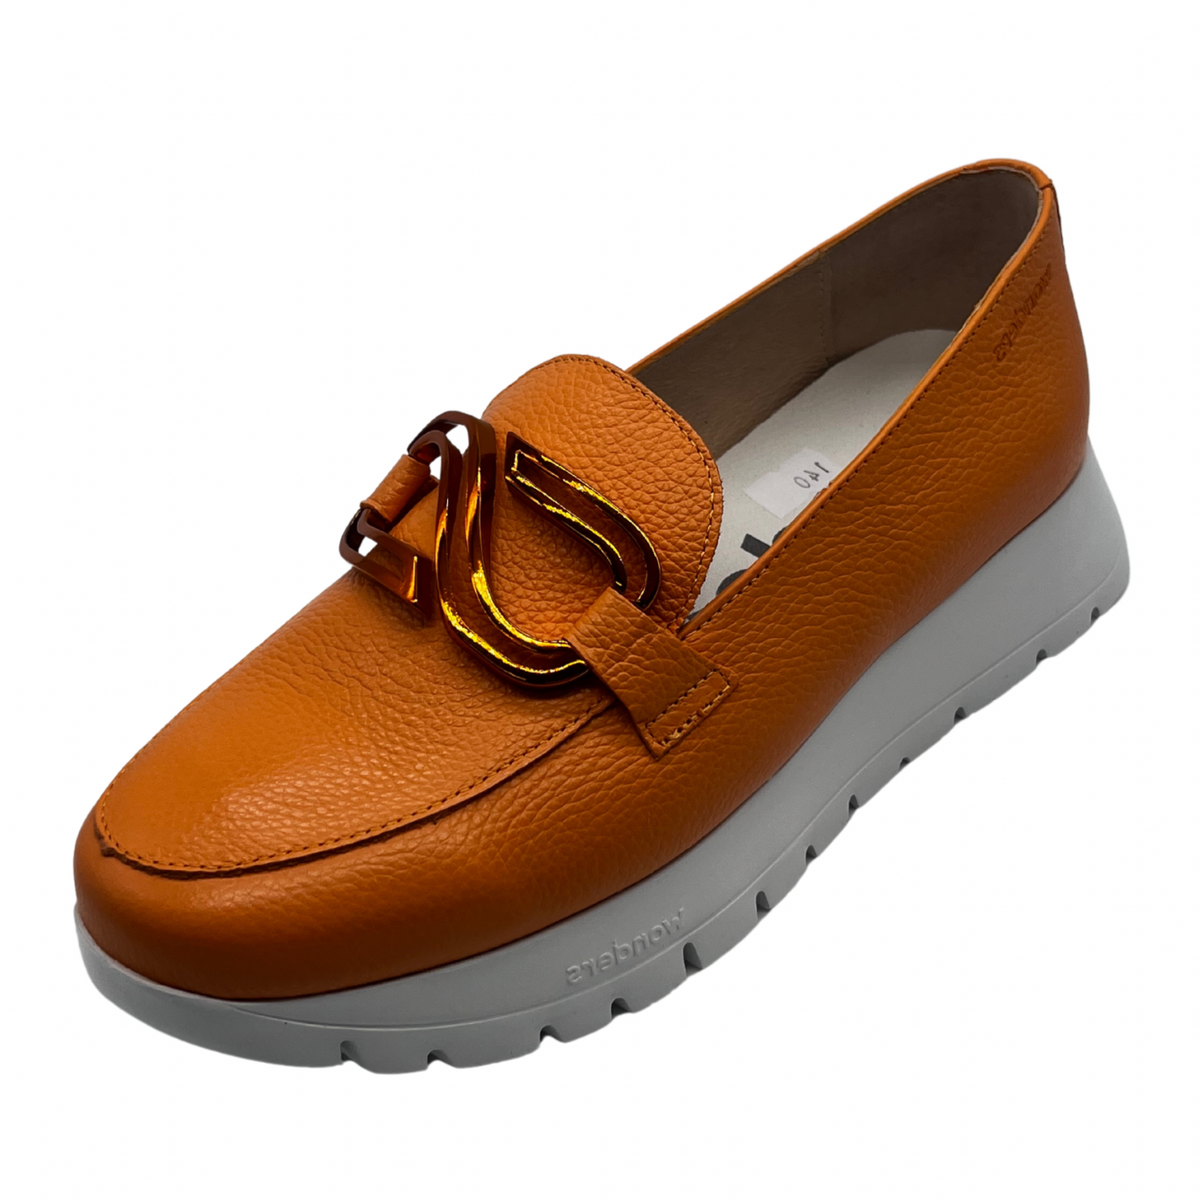 Wonders Orange Leather Loafers